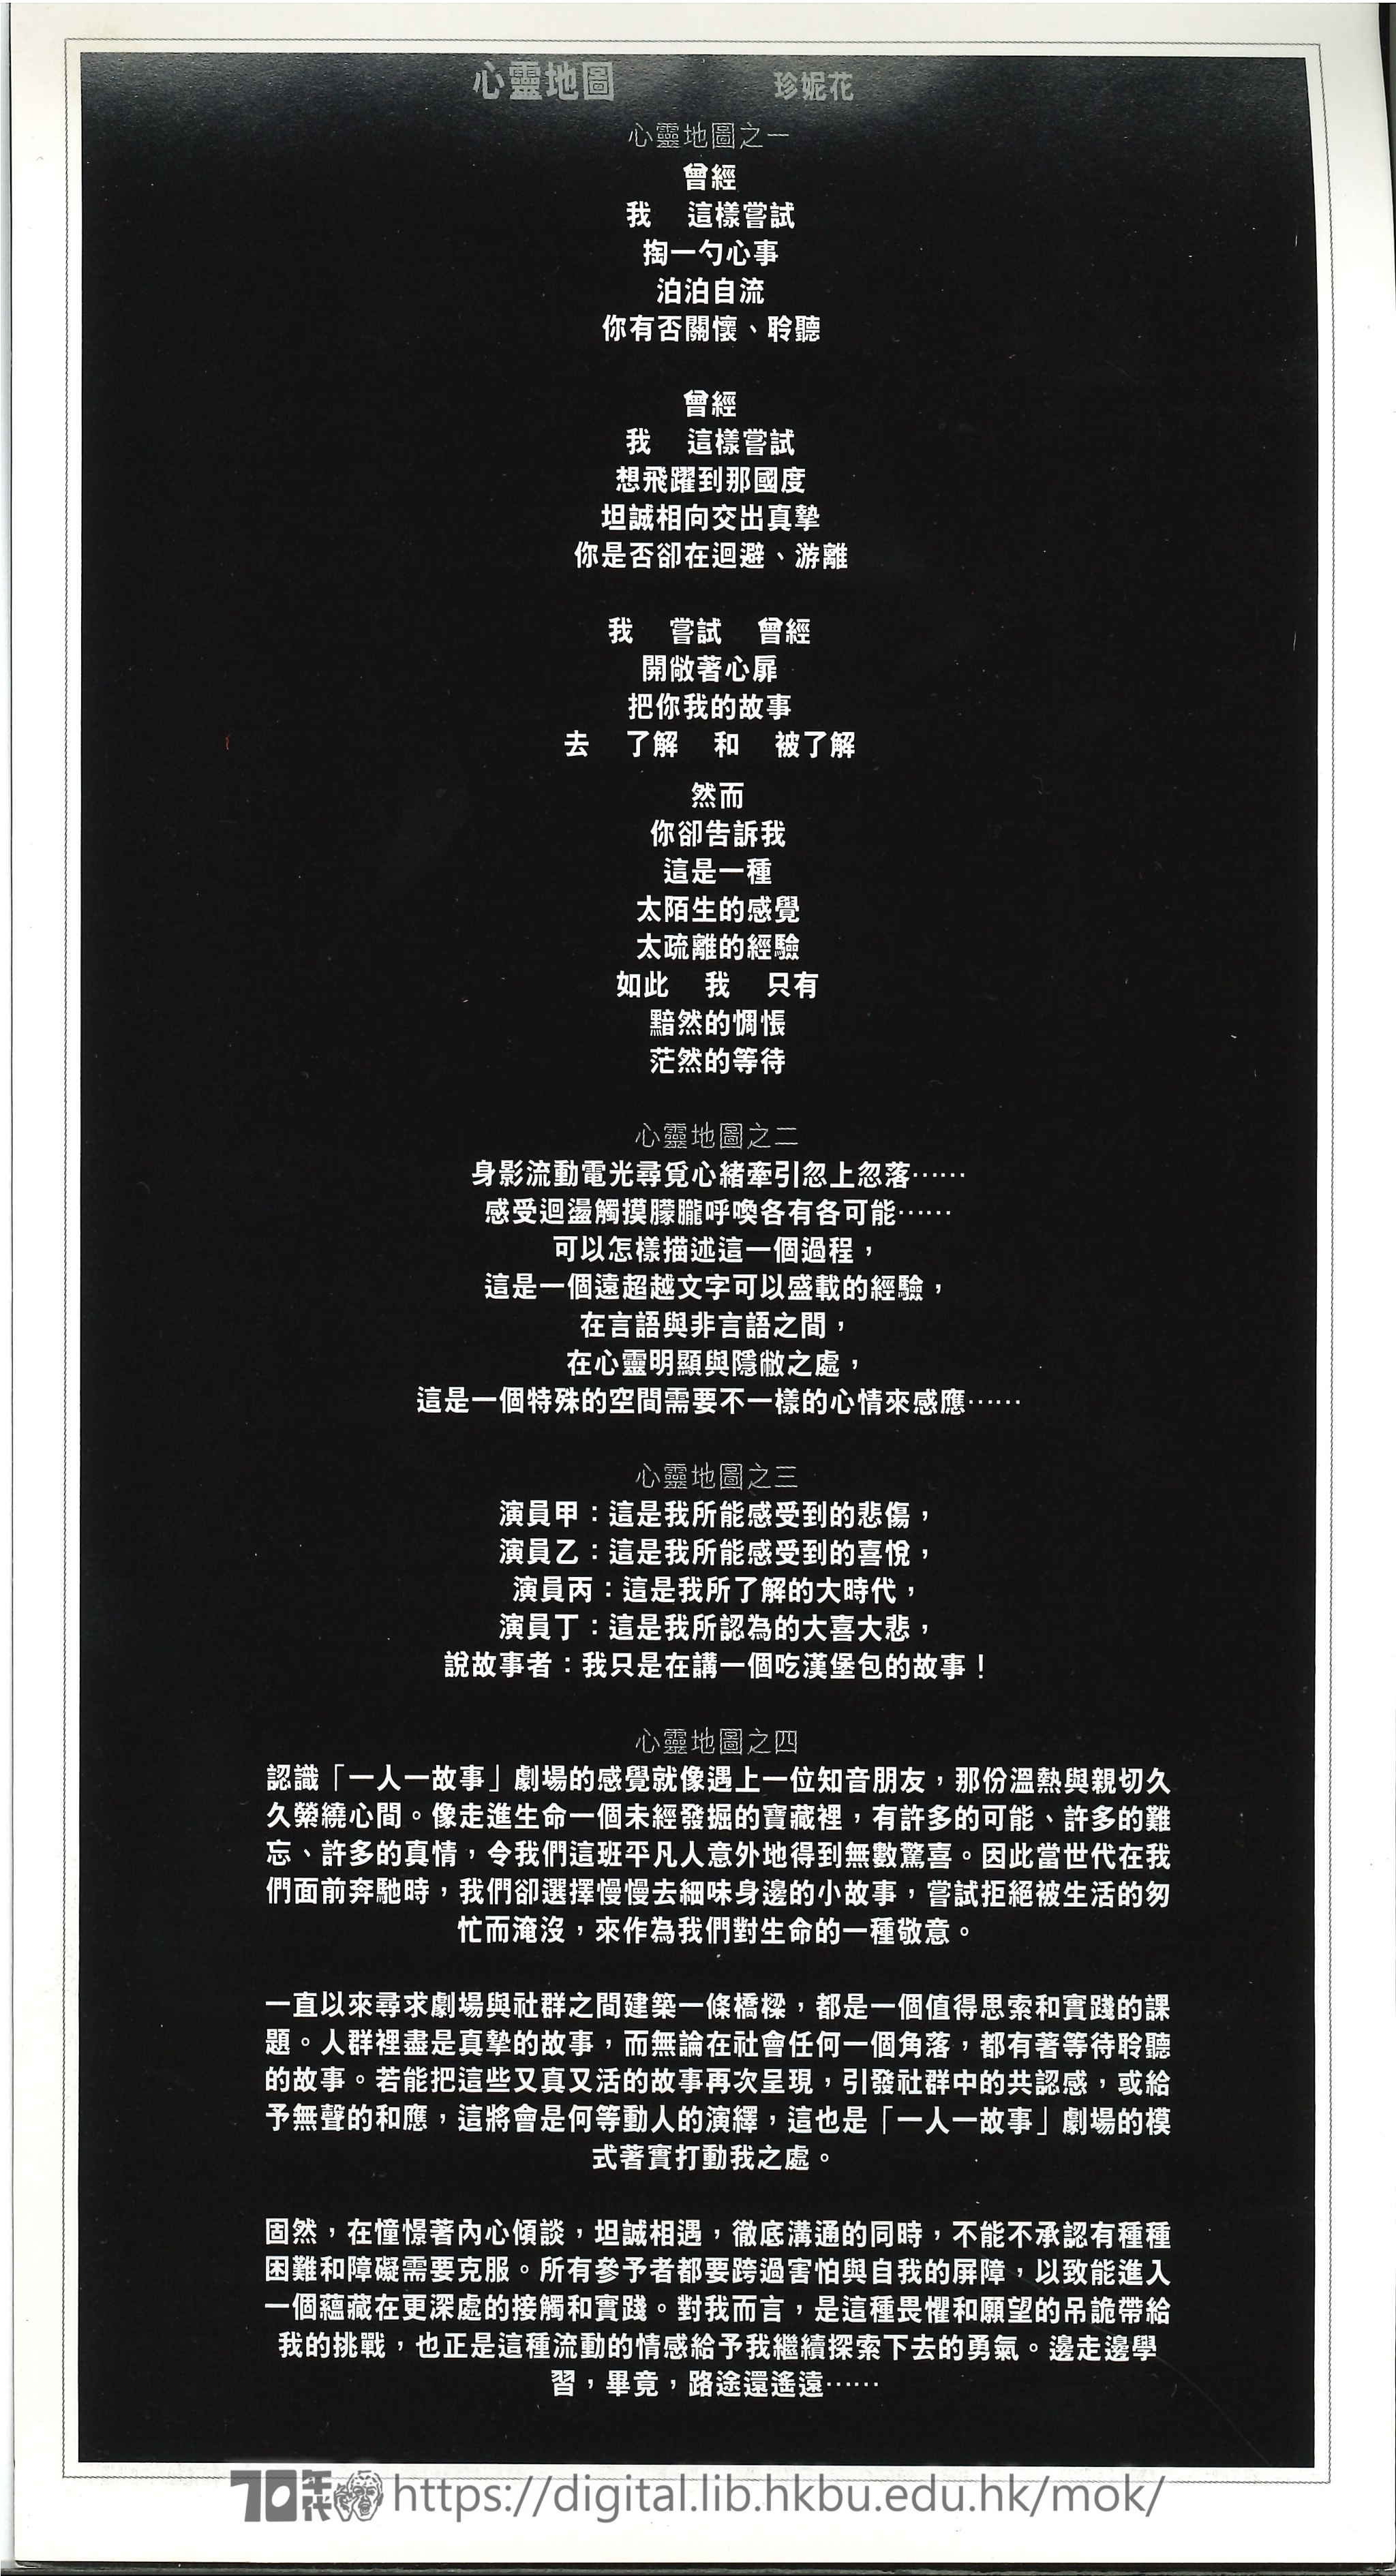 The Story of Ng Chung Yin  Brochure of Hong Kong Incarnated  